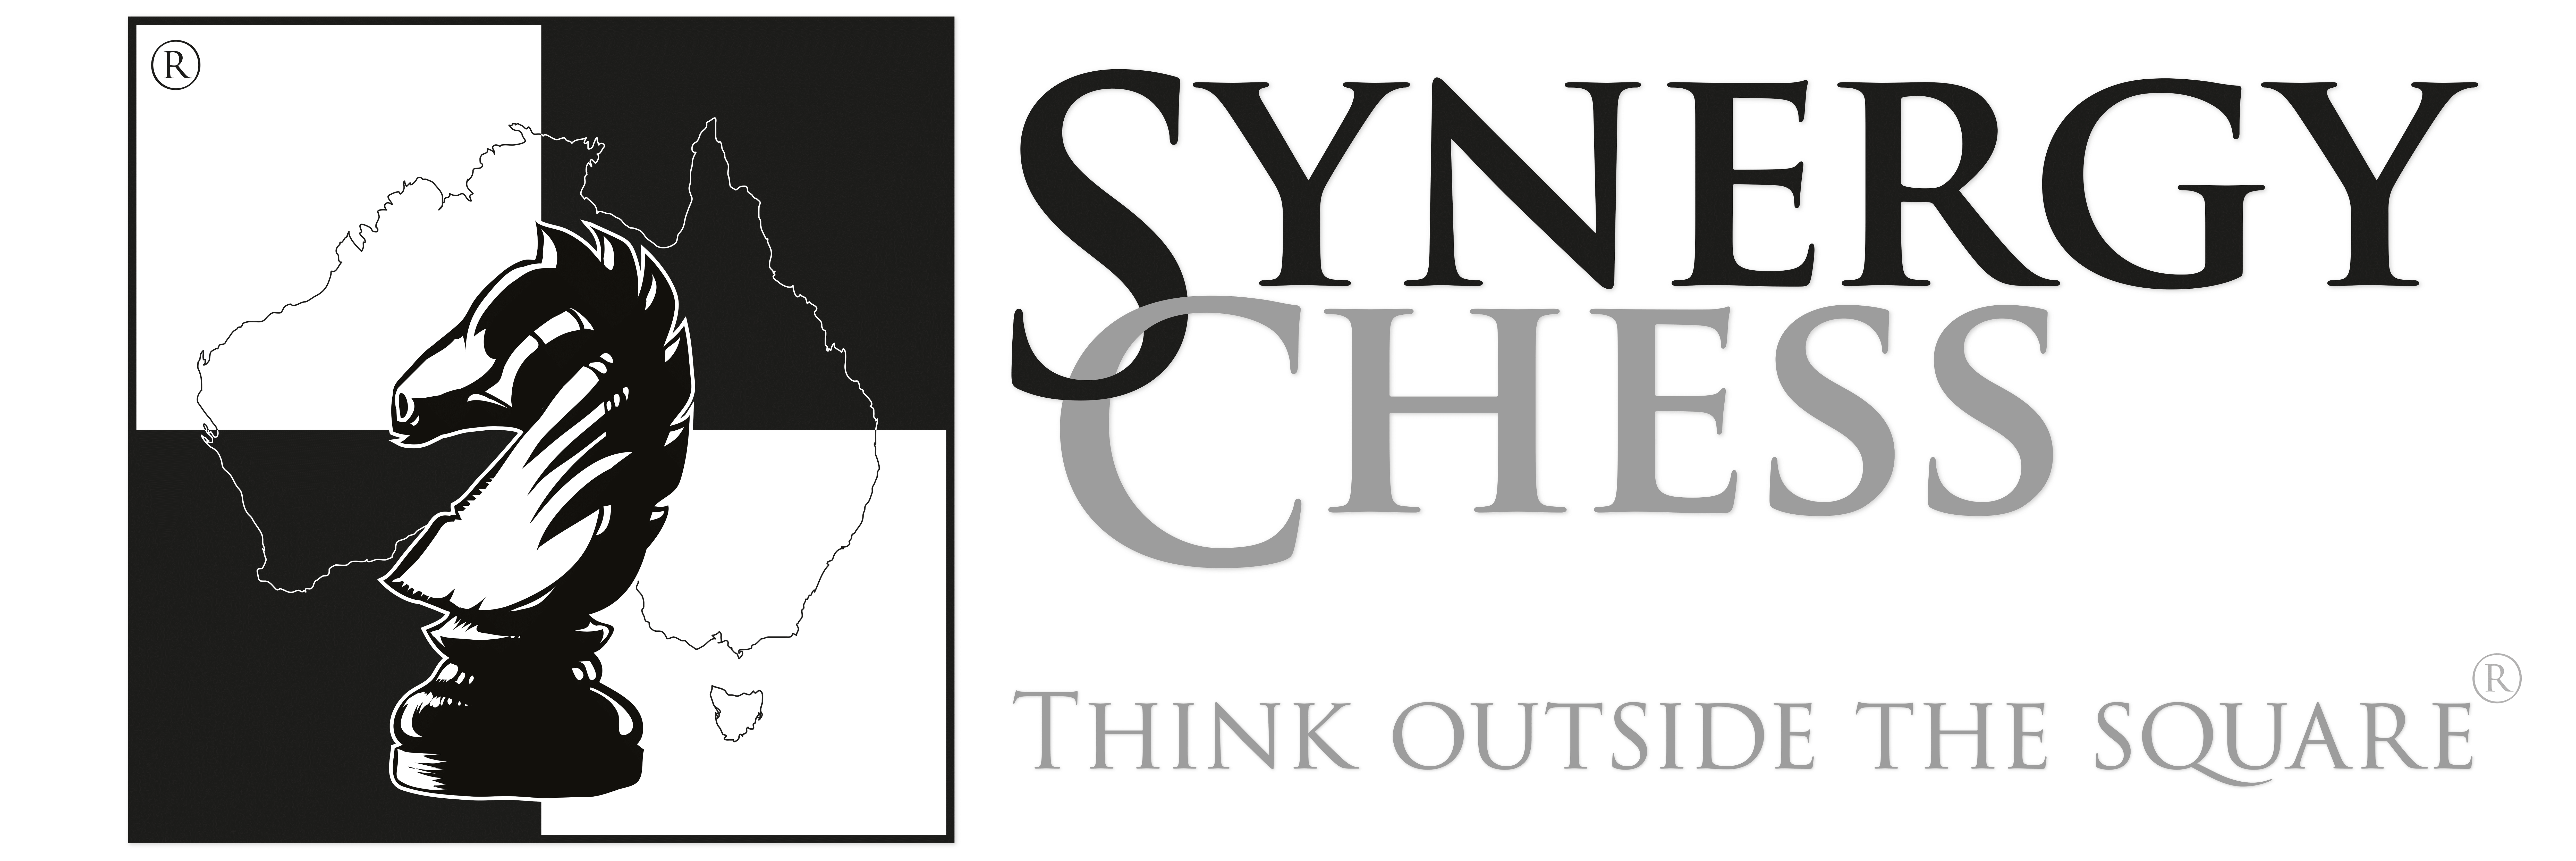 Synergy Chess – Synergy Chess